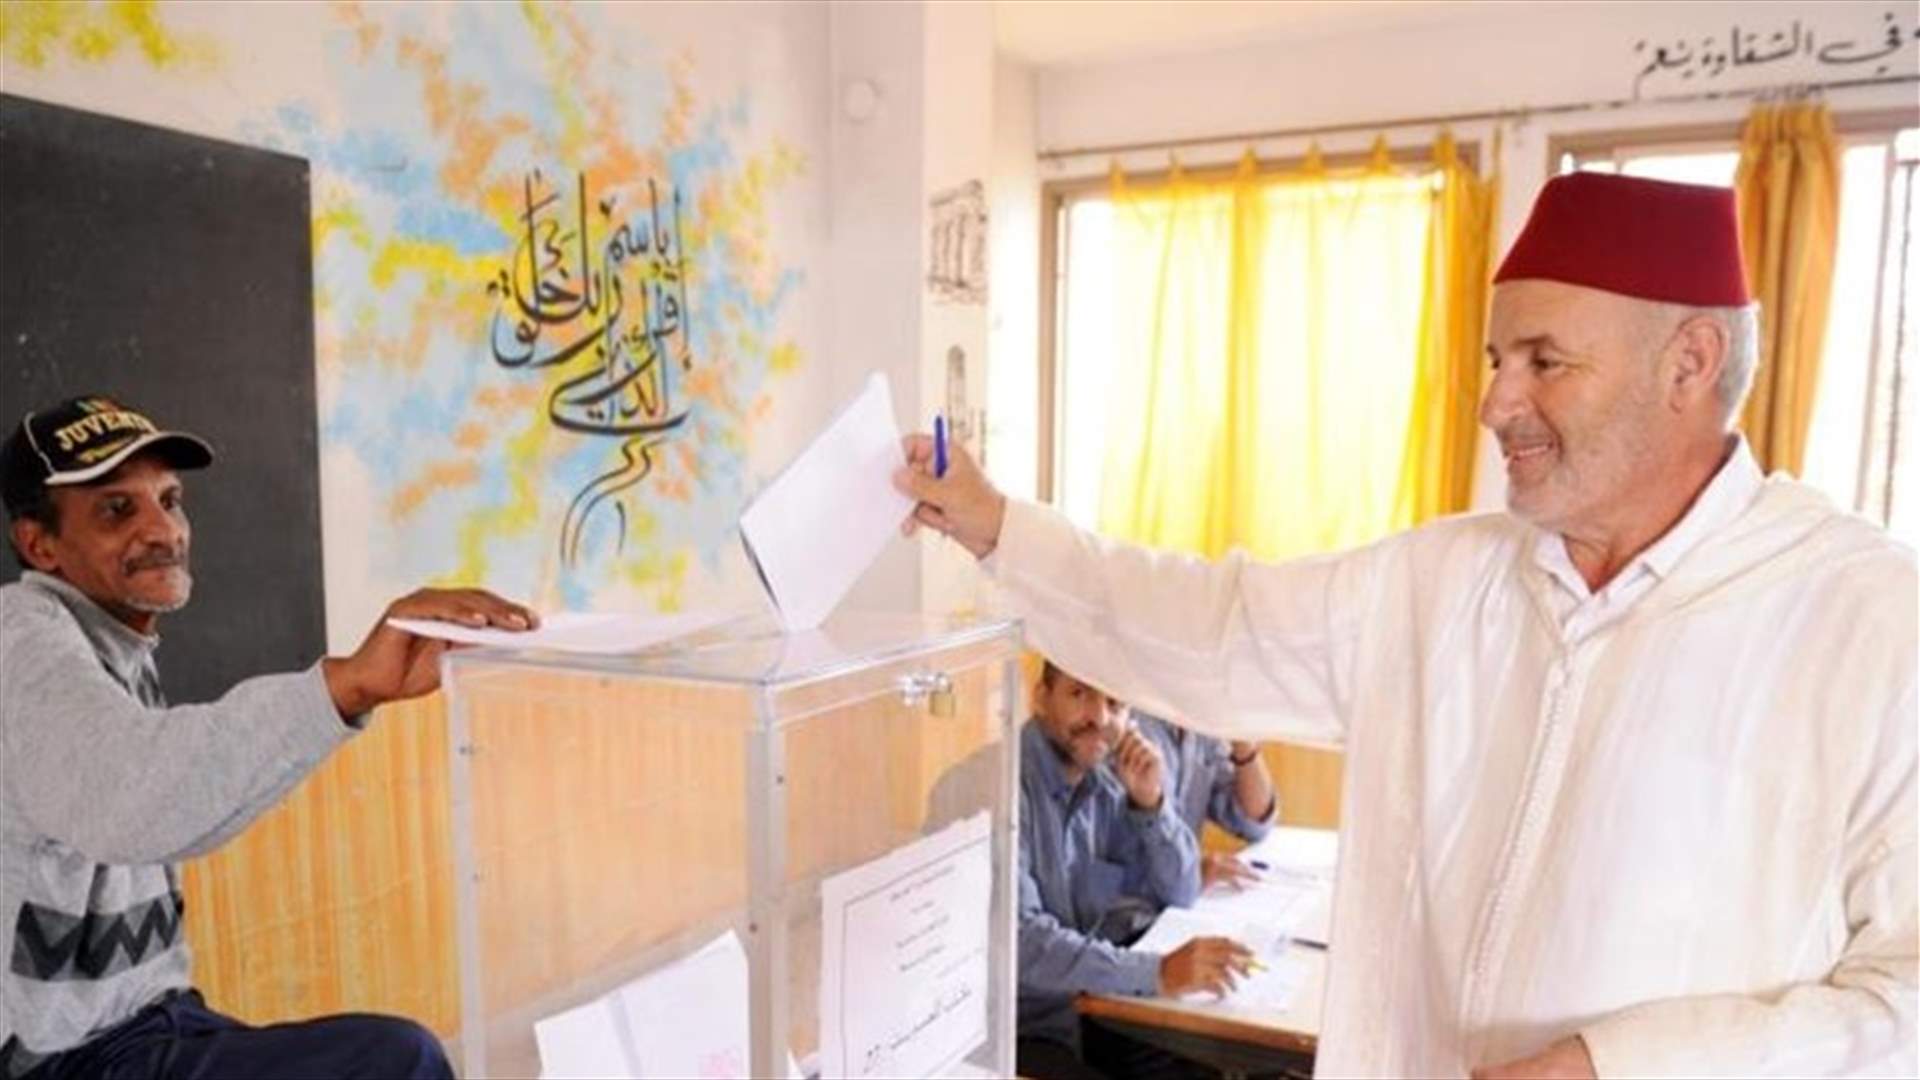 تقدم حزب العدالة والتنمية الإسلامي على منافسيه في الانتخابات البرلمانية بالمغرب